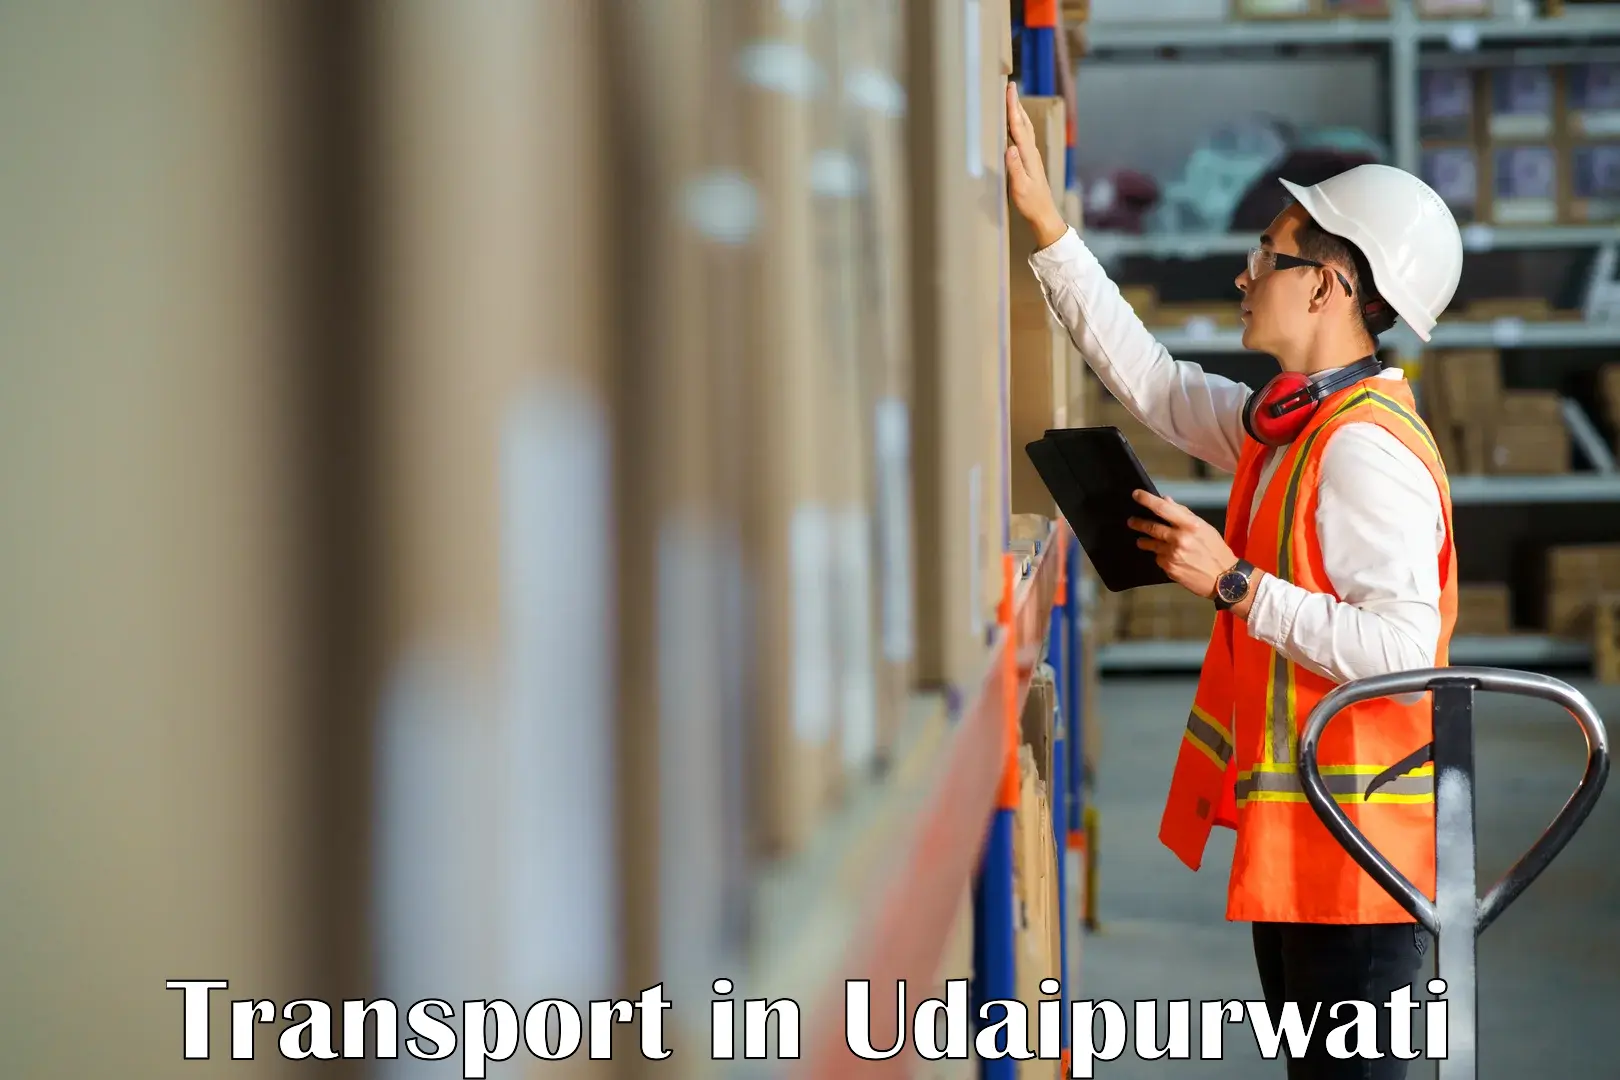 Interstate goods transport in Udaipurwati